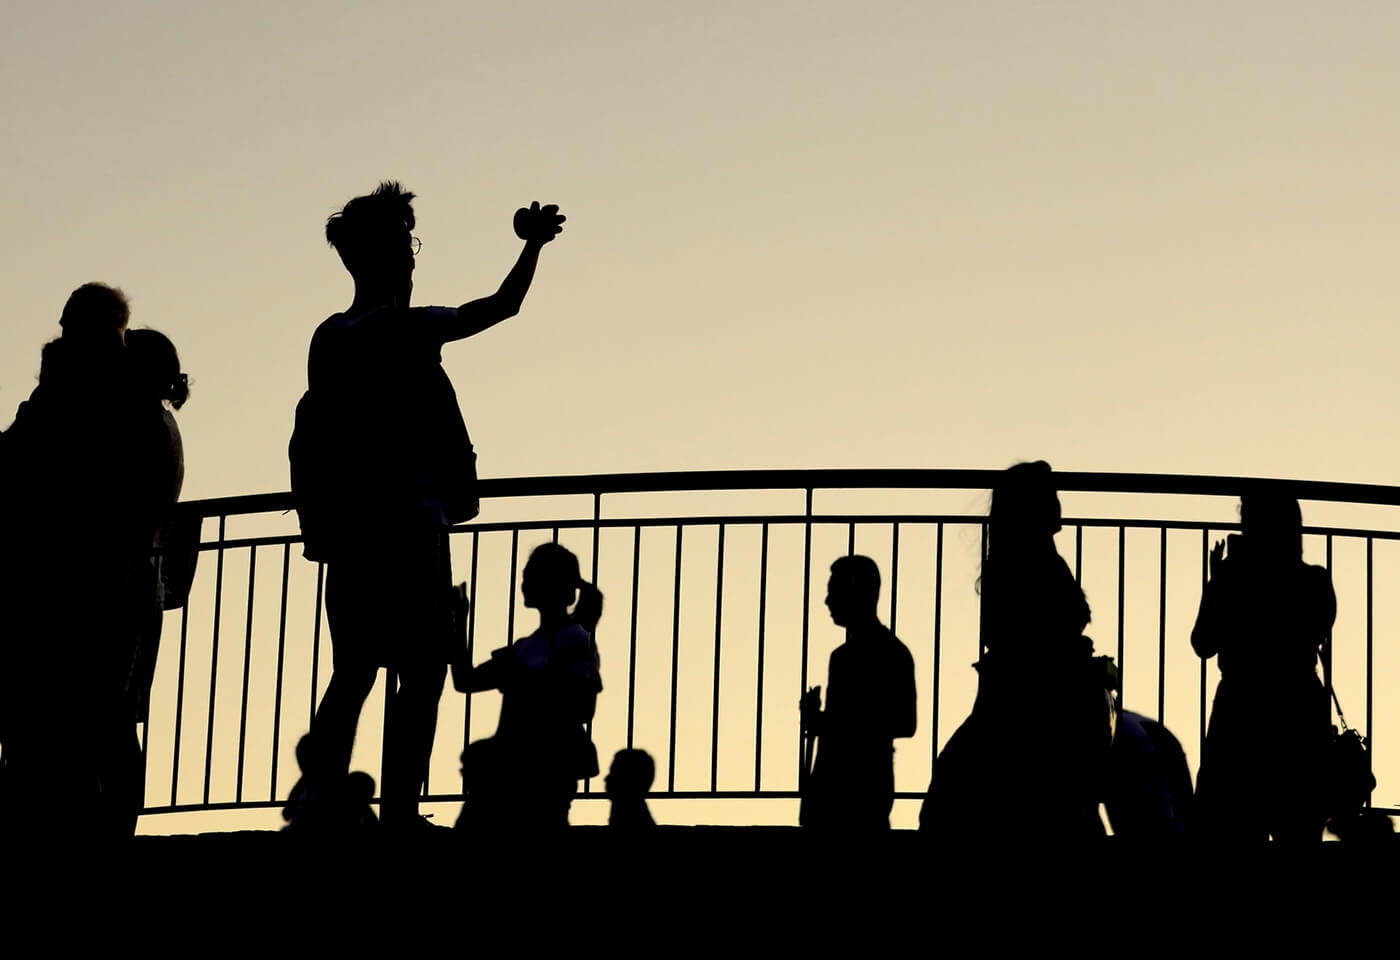 Image of people's silhouette taken by Stephen Finkel